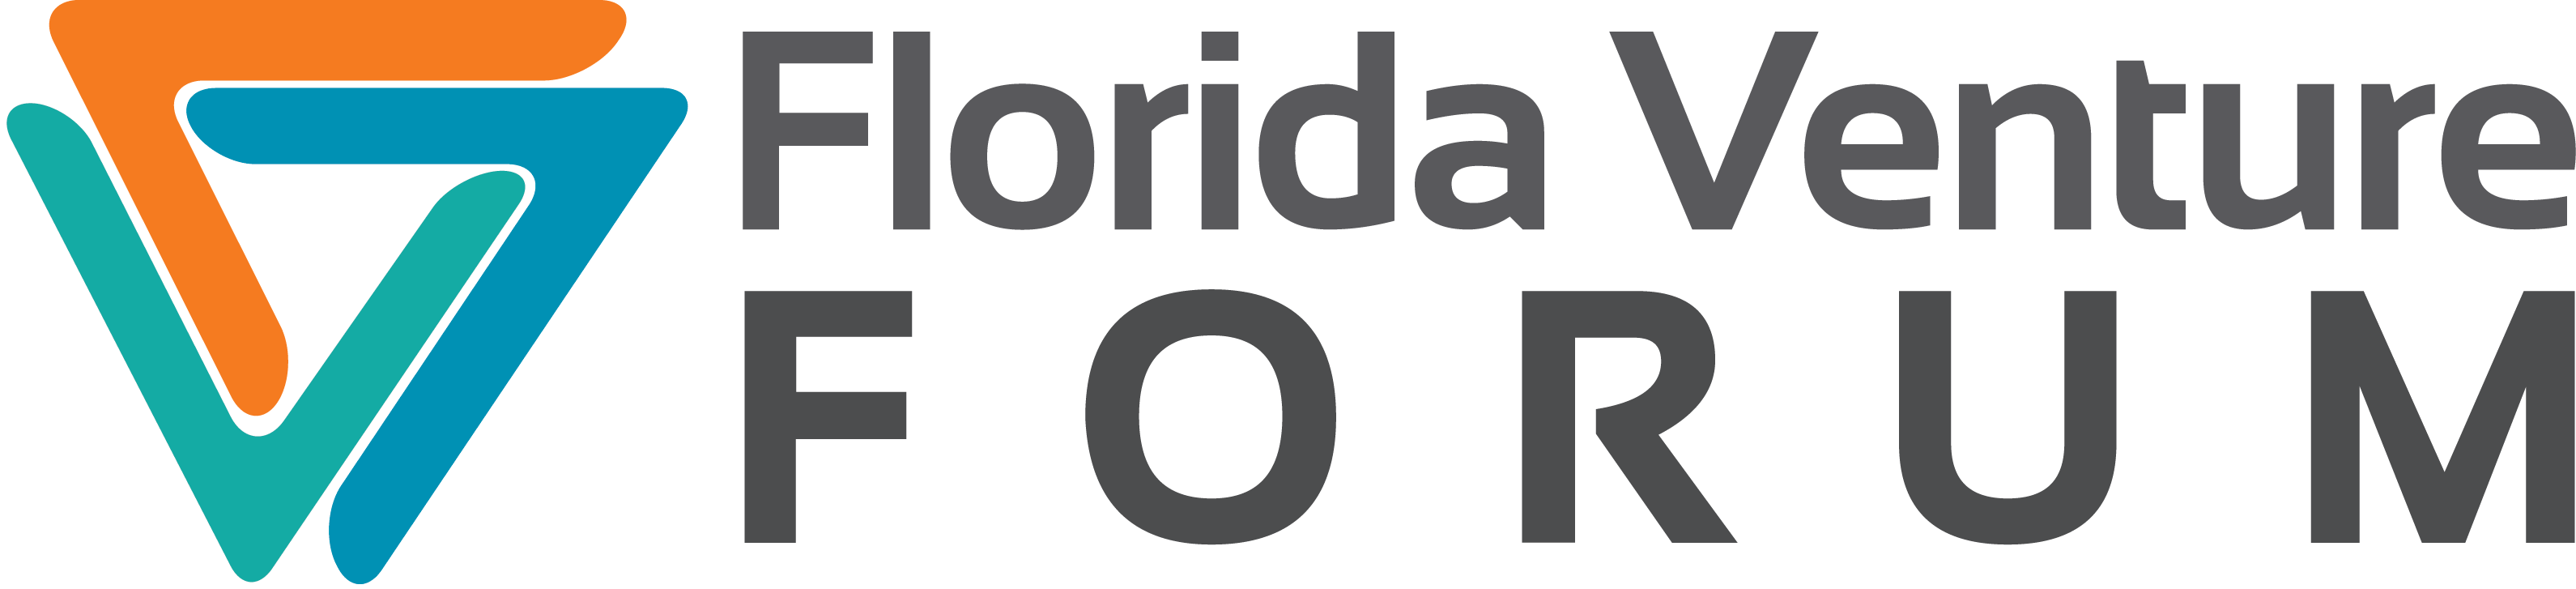 logo - Florida Venture Forum